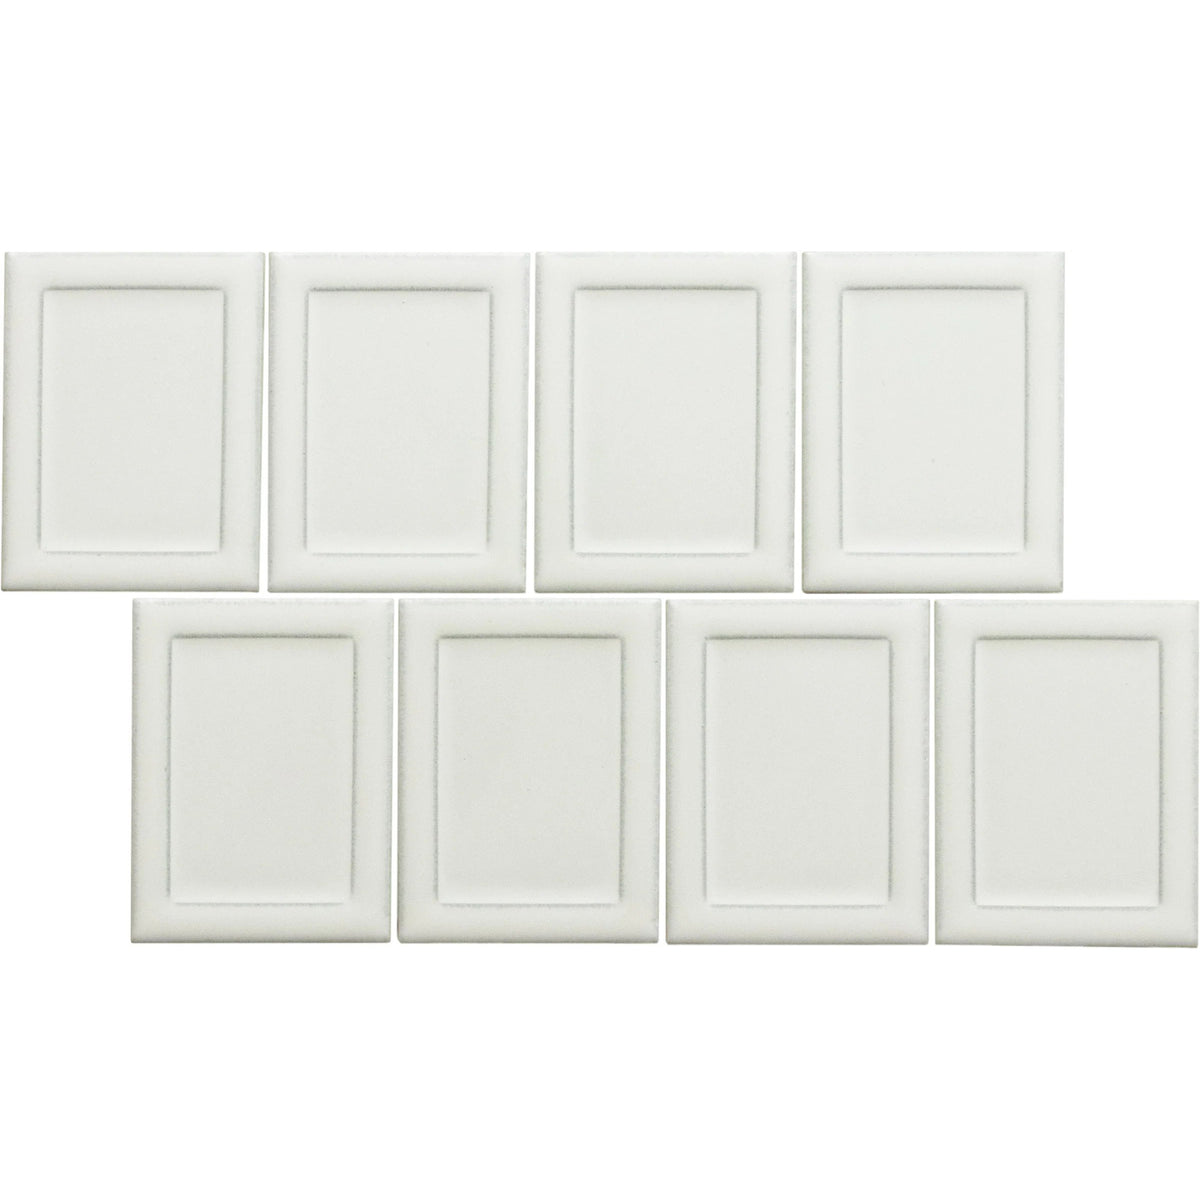 Emser Tile - Cuadro - 9 in. x 14 in. Glazed Porcelain Mosaic - White Frame